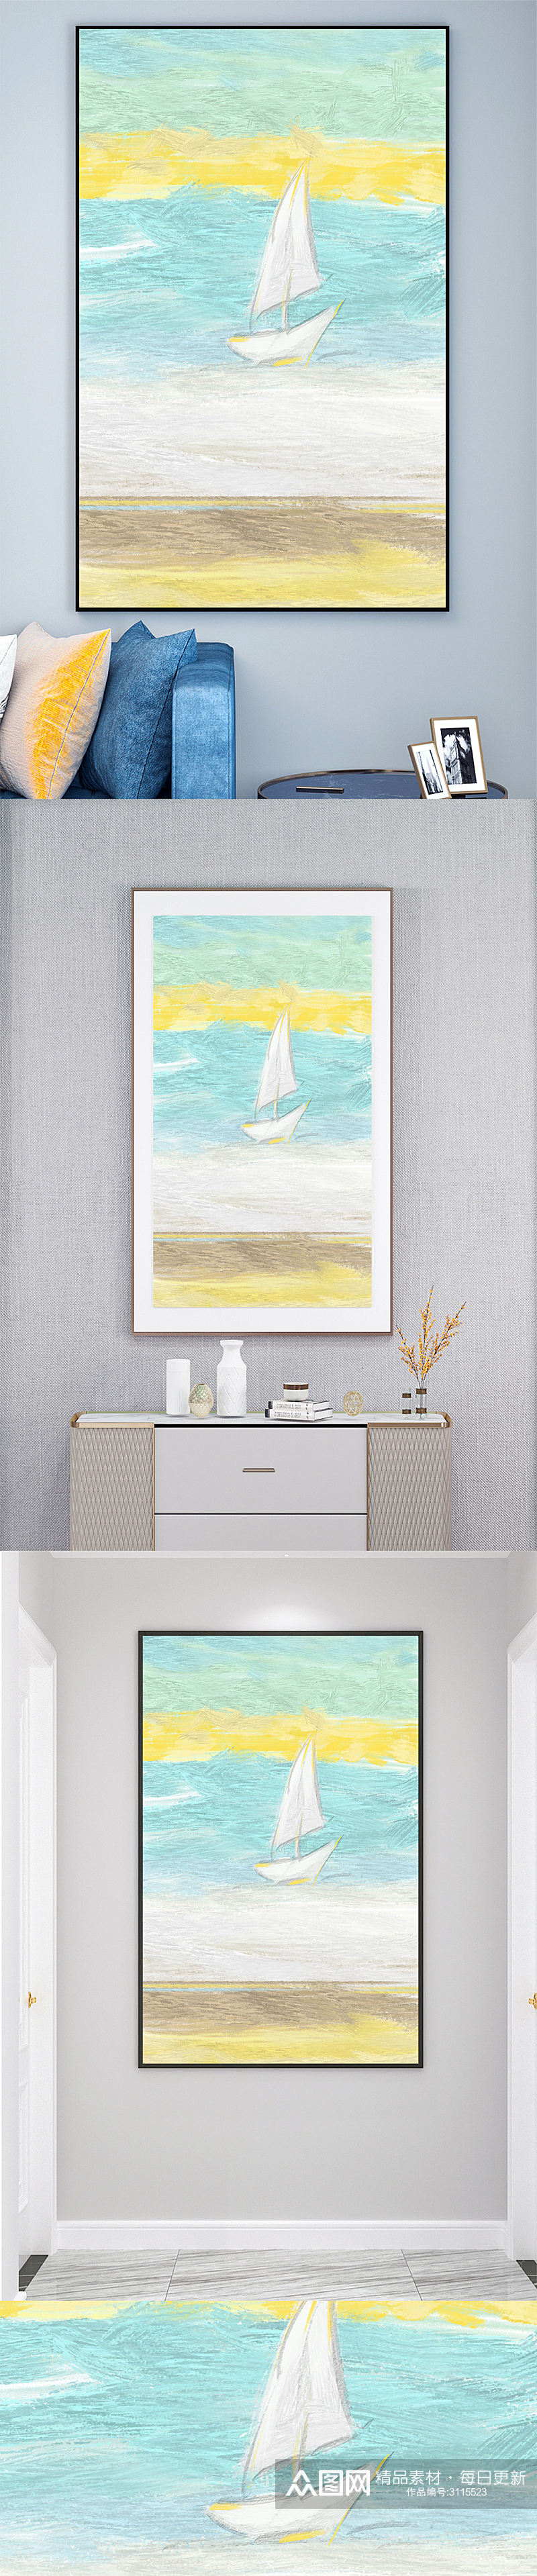 油画海洋帆船壁画装饰画素材